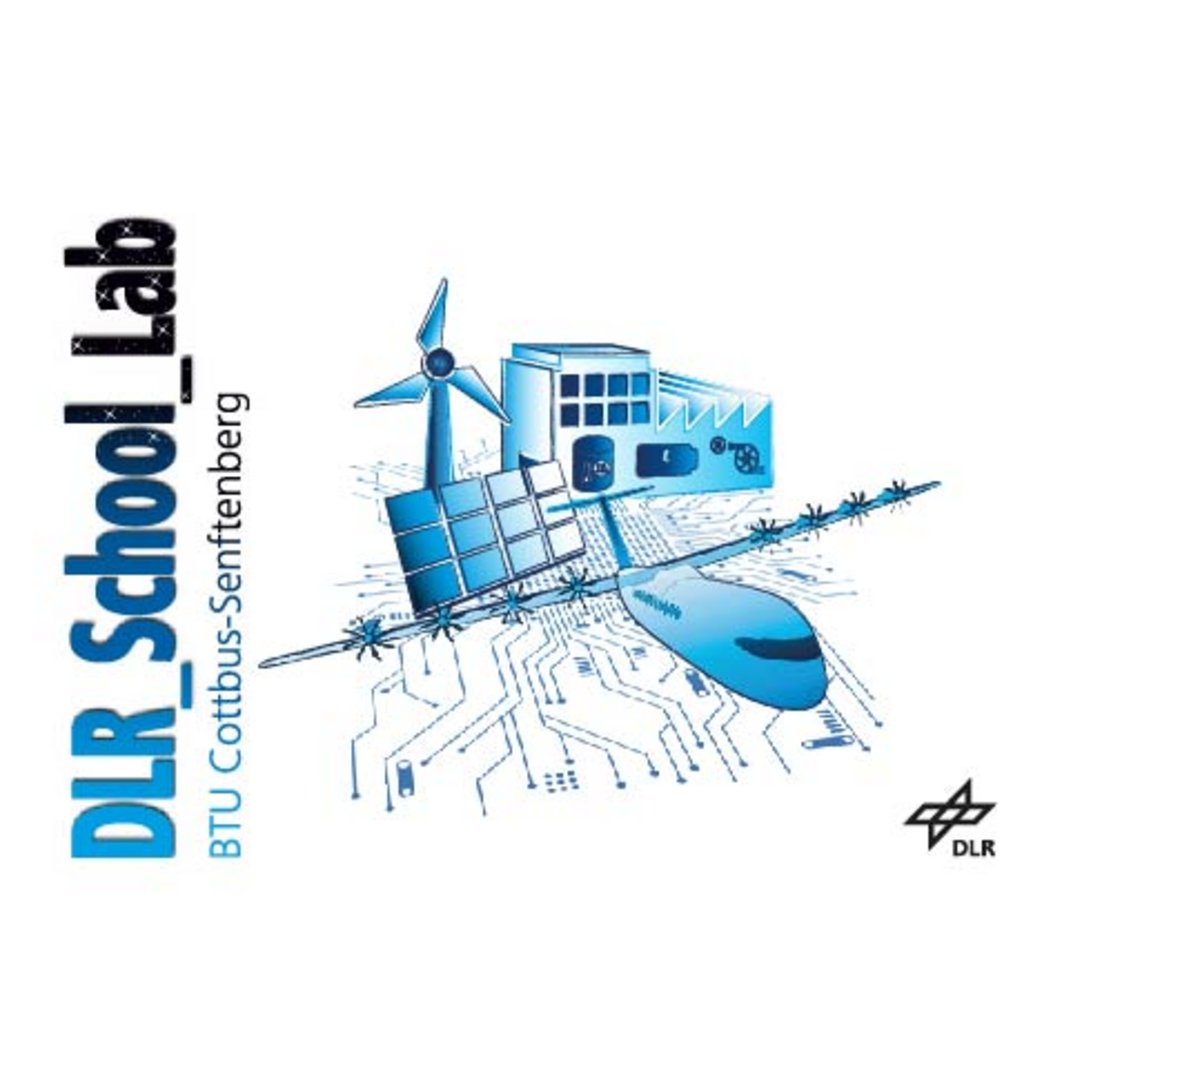 DLR School Lab KeyVisual